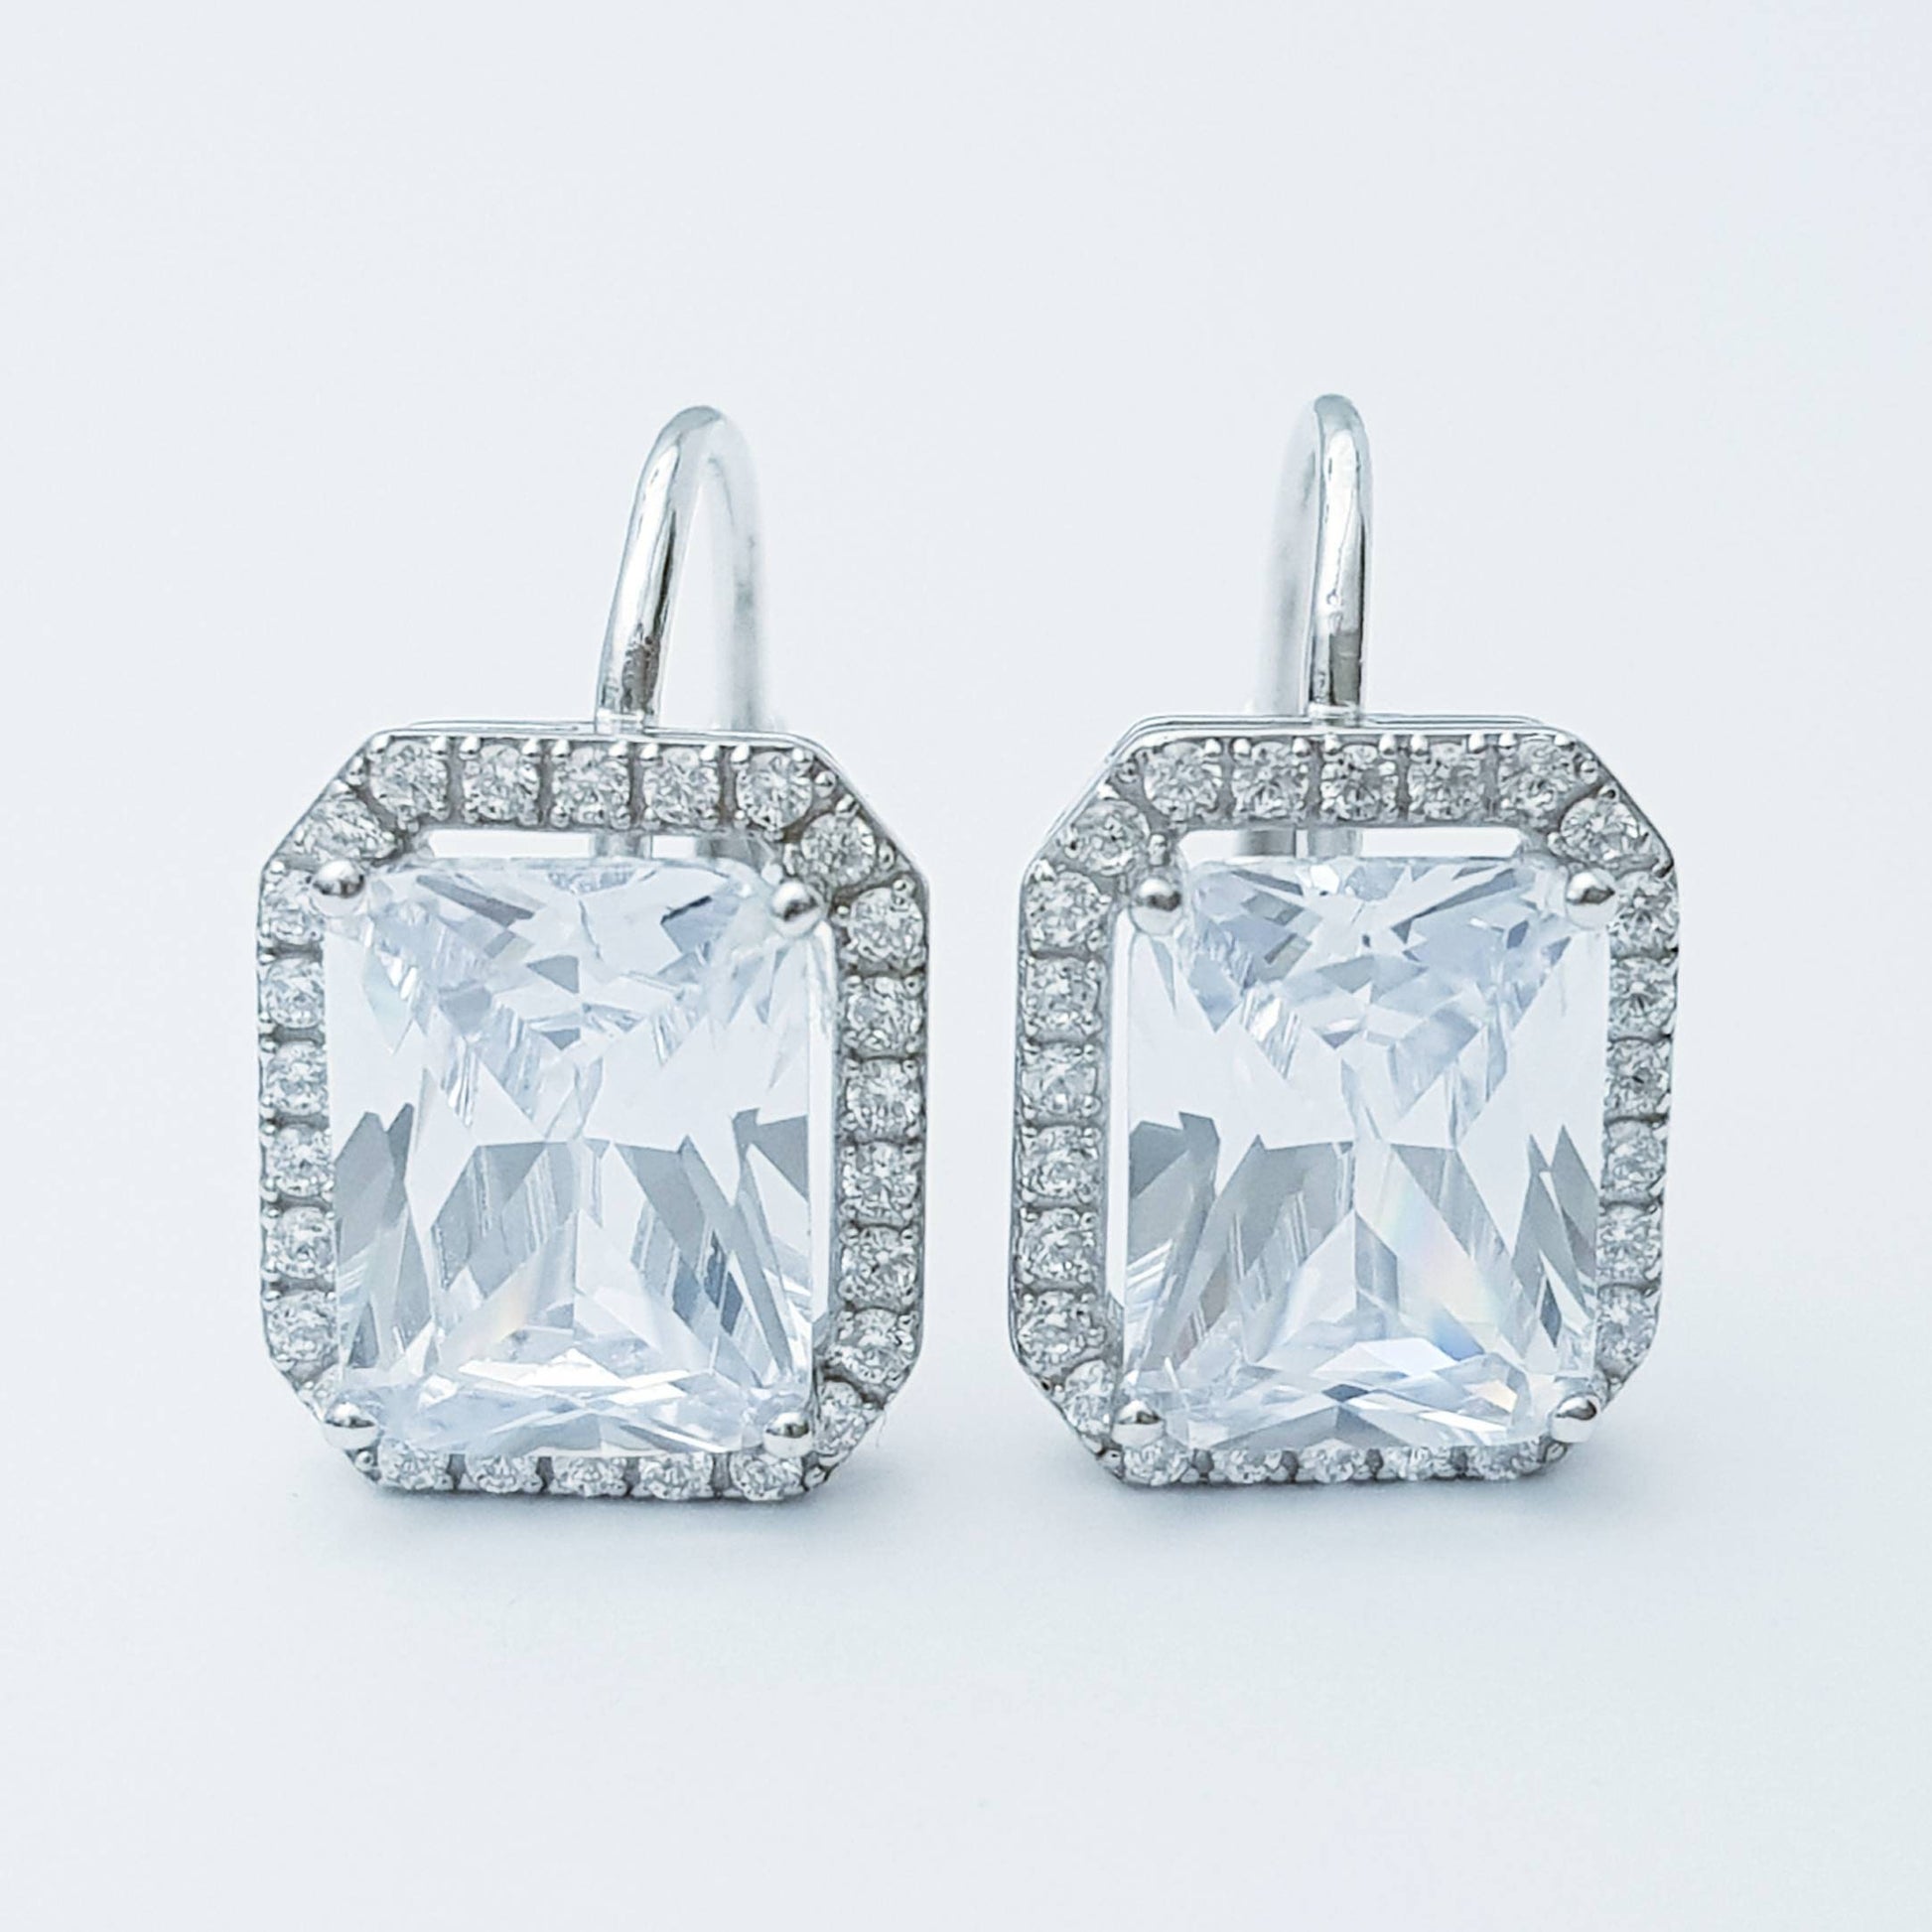 Sterling silver faux diamond leverback earrings, rectangular drop earrings